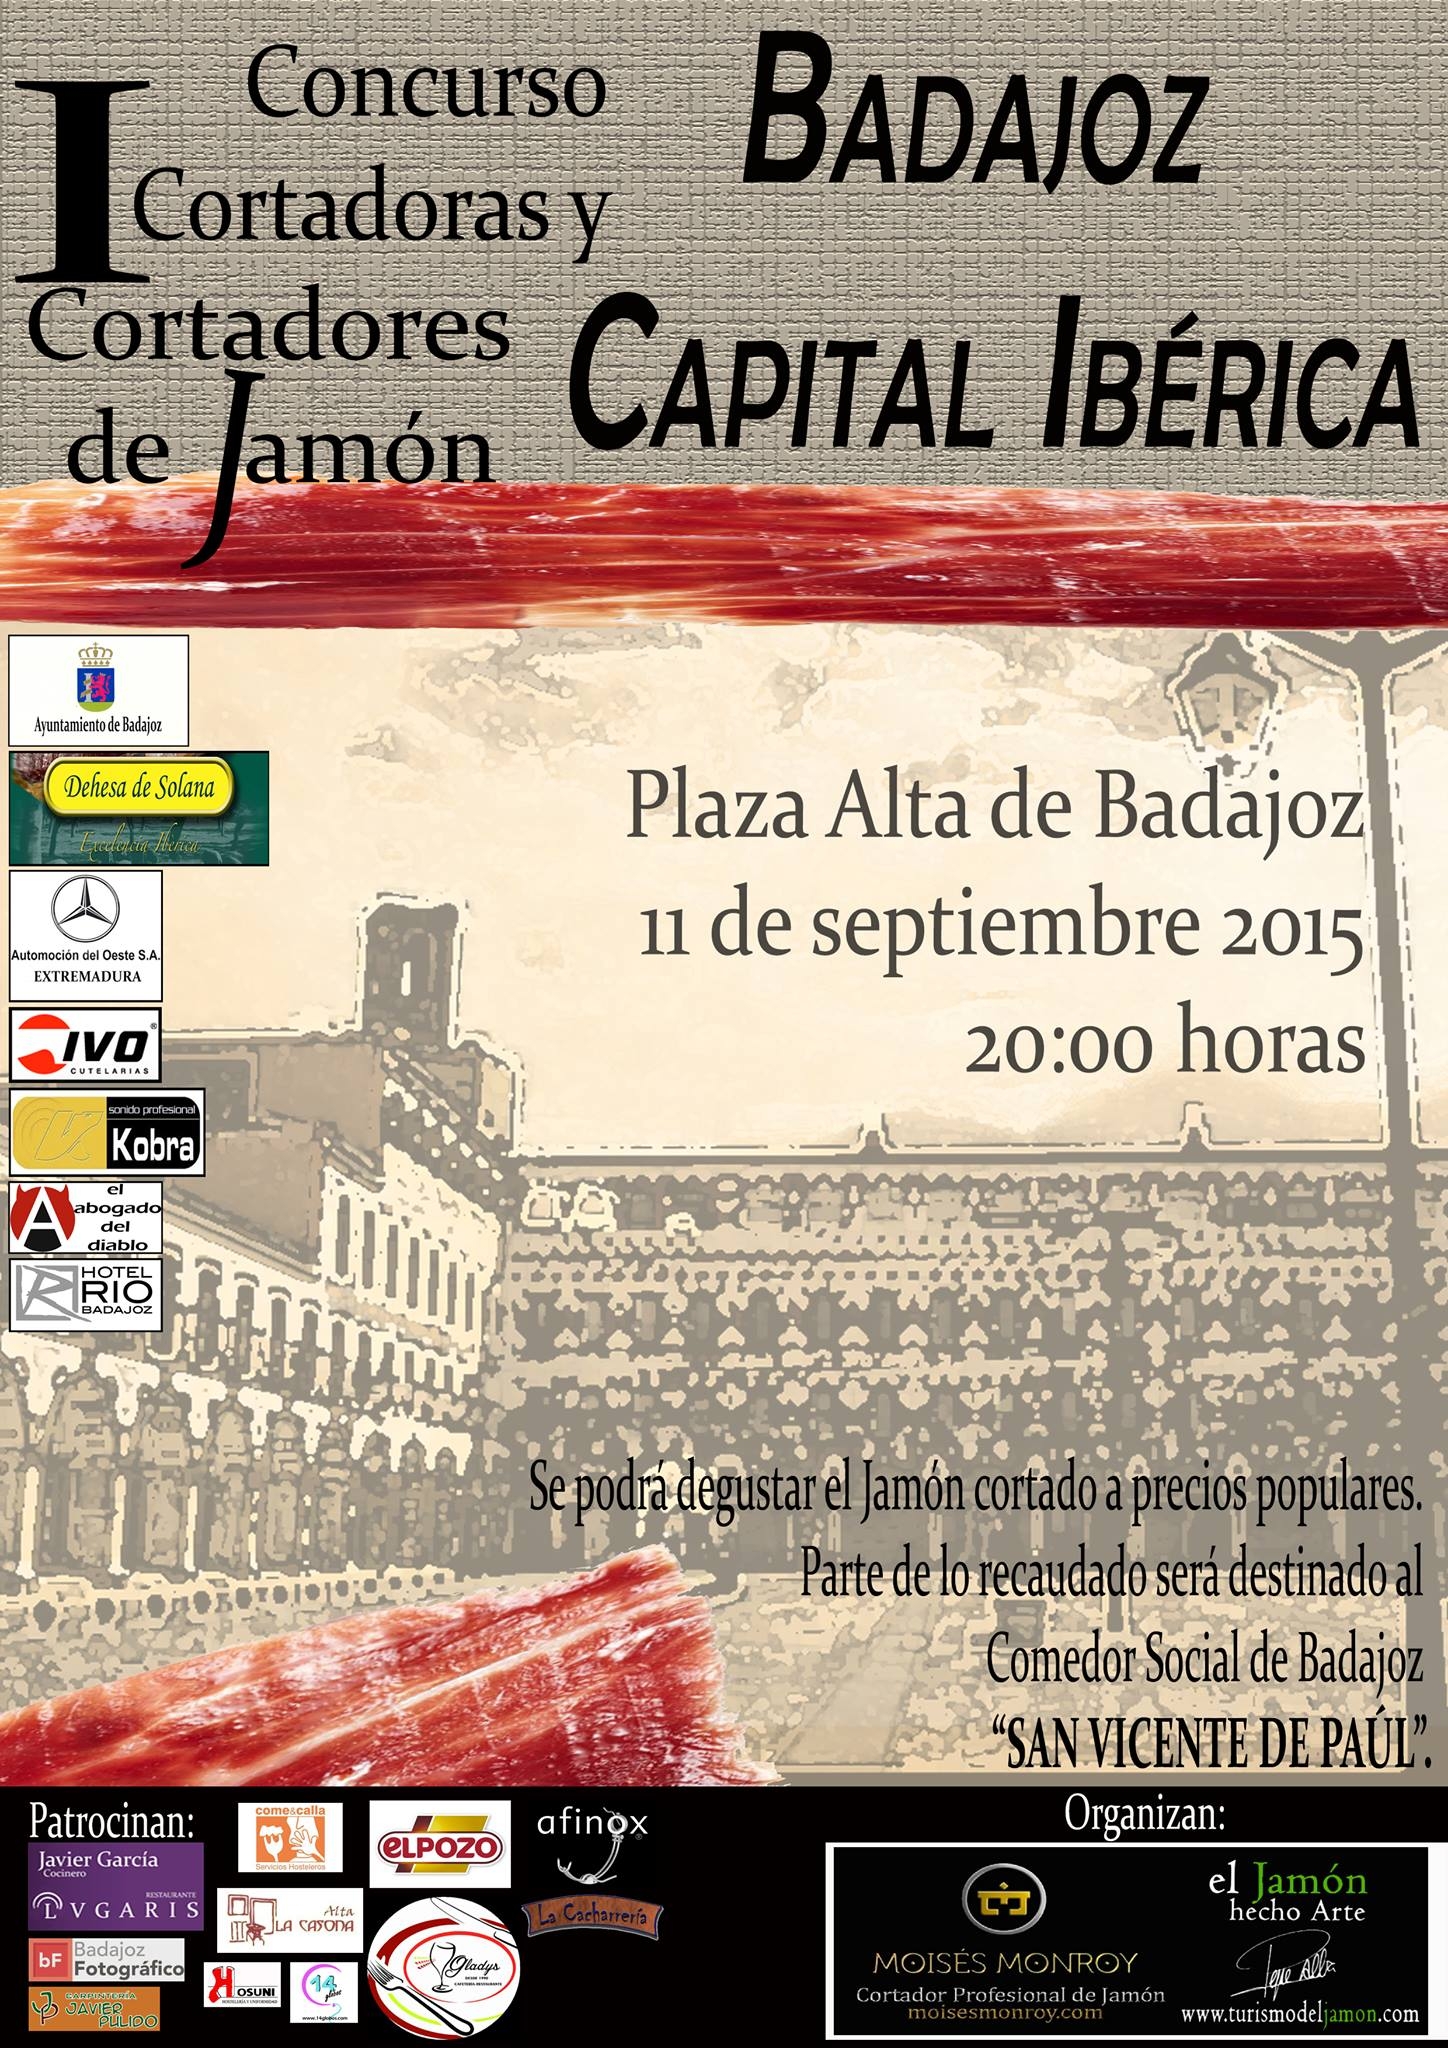 Concurso cortadoras y cortadores de jamon badajoz capital iberica